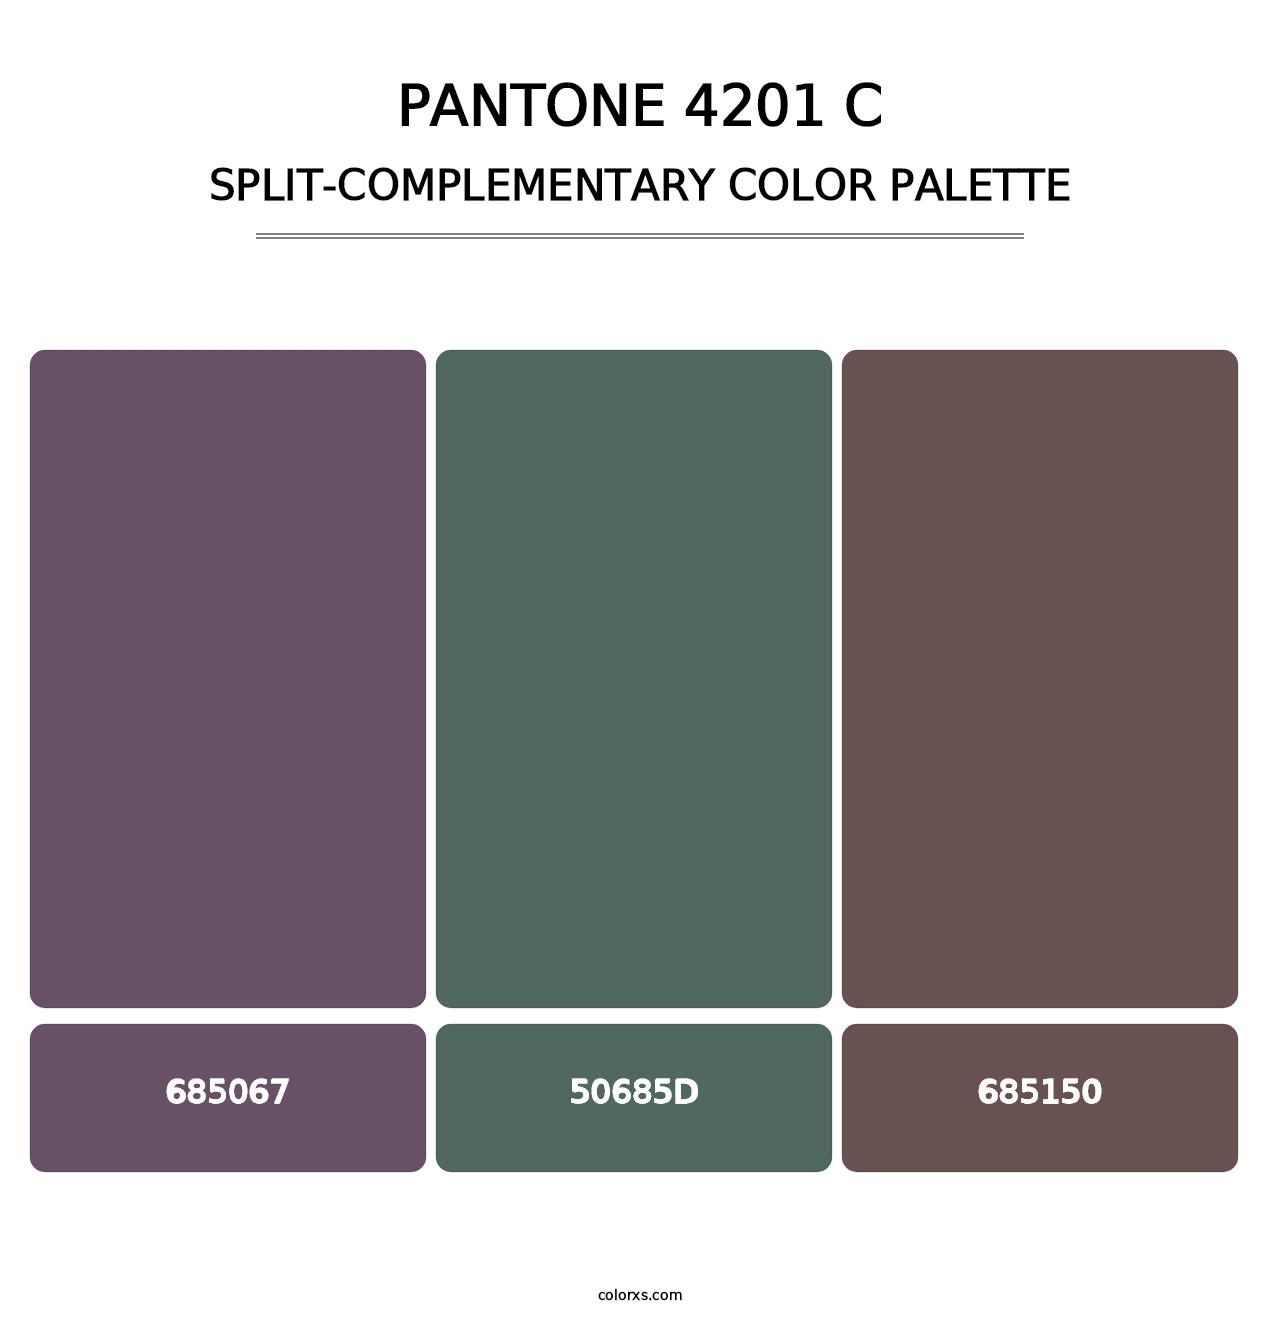 PANTONE 4201 C - Split-Complementary Color Palette